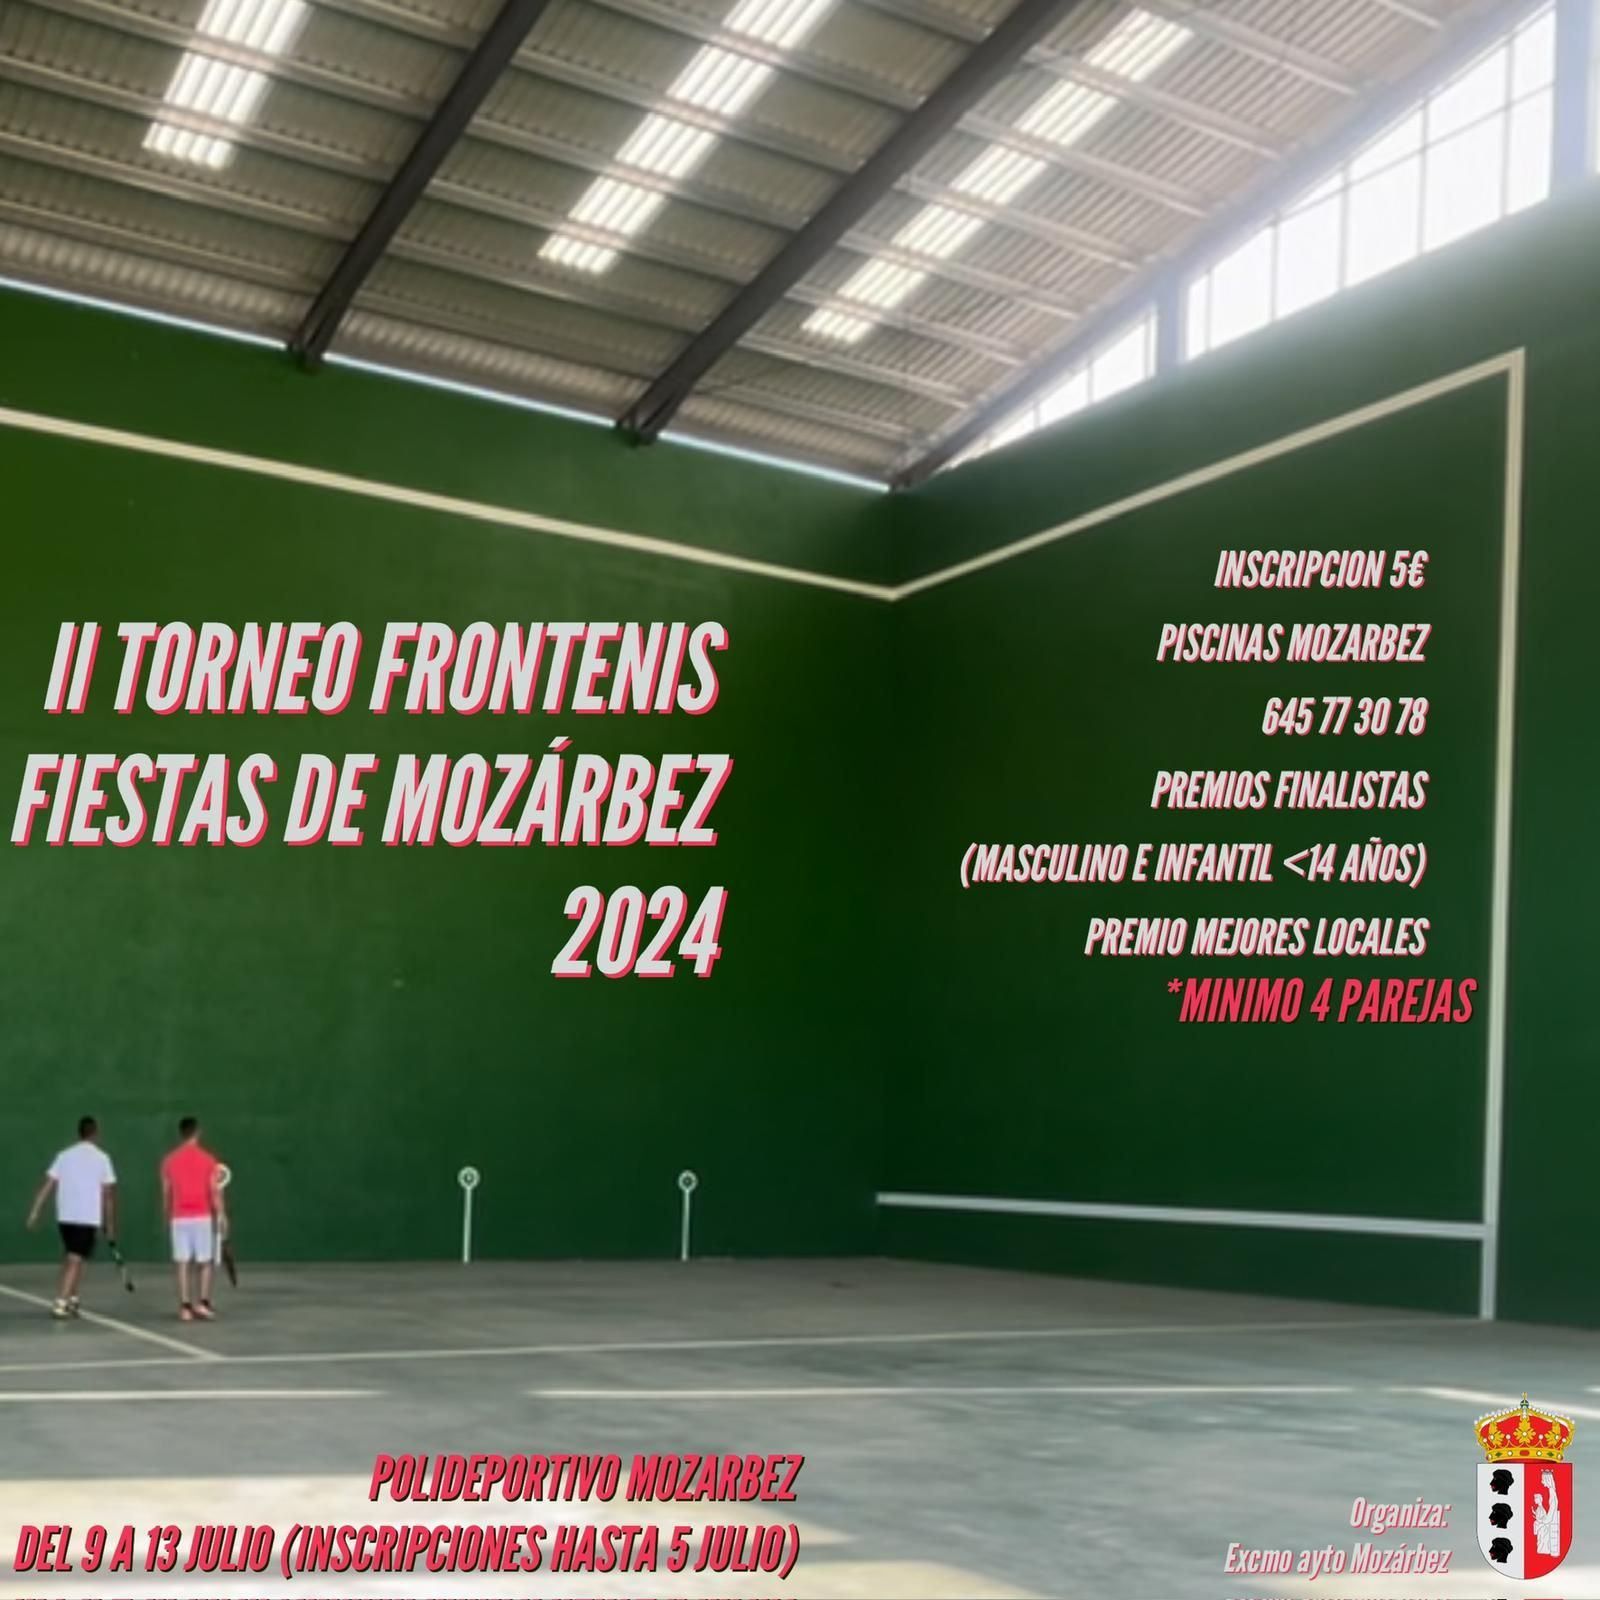 II TORNEO FRONTENIS FIESTAS DE MOZARBEZ 2024